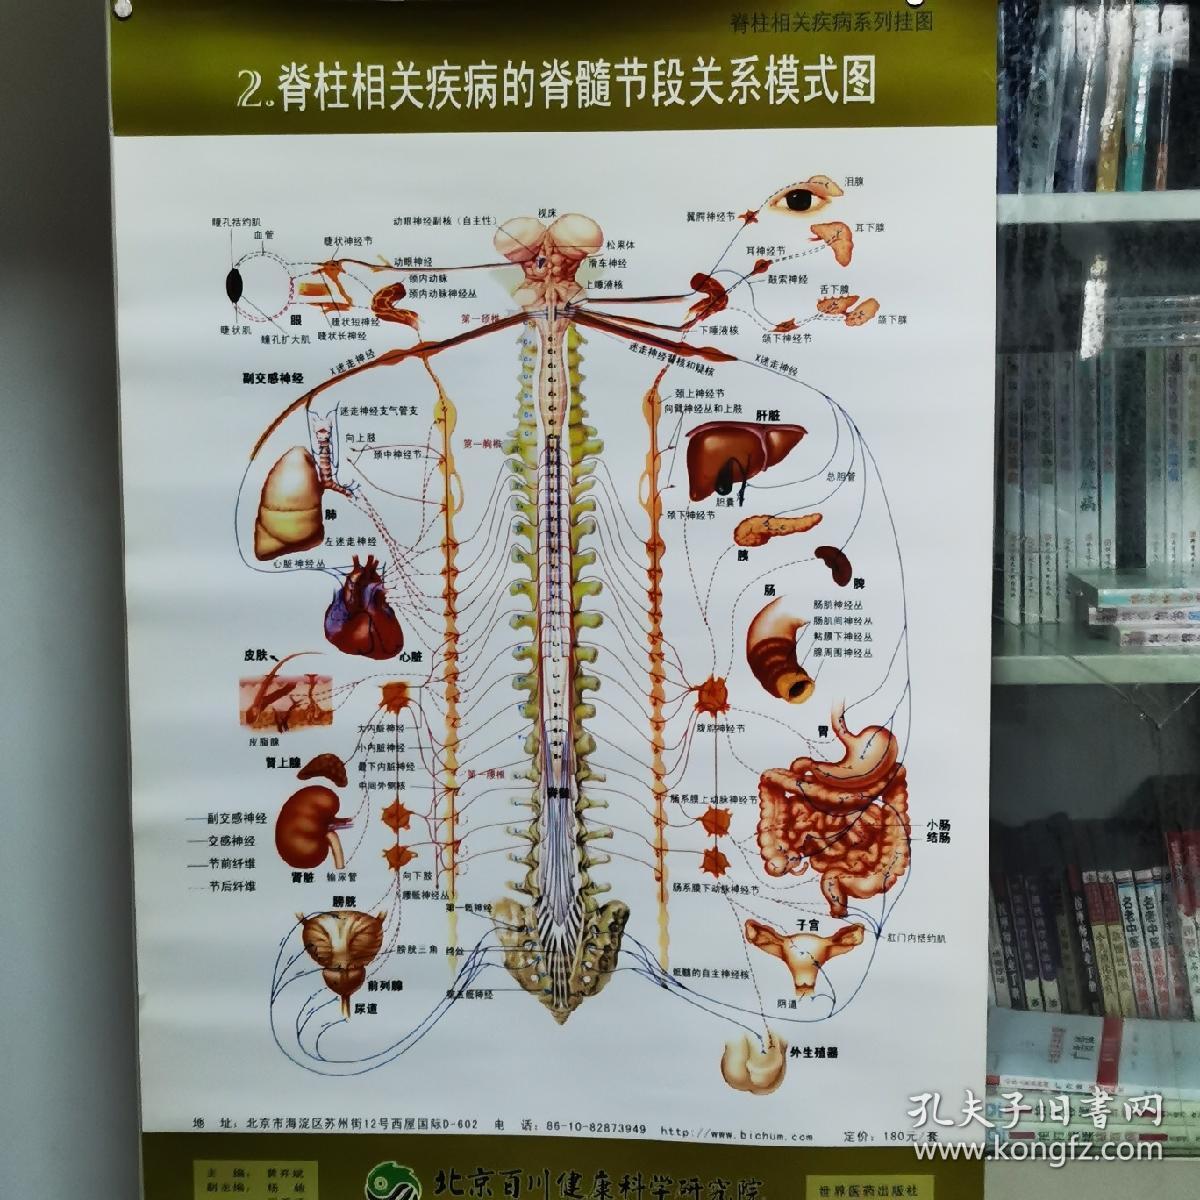 脊柱相关疾病的脊髓节段模式图